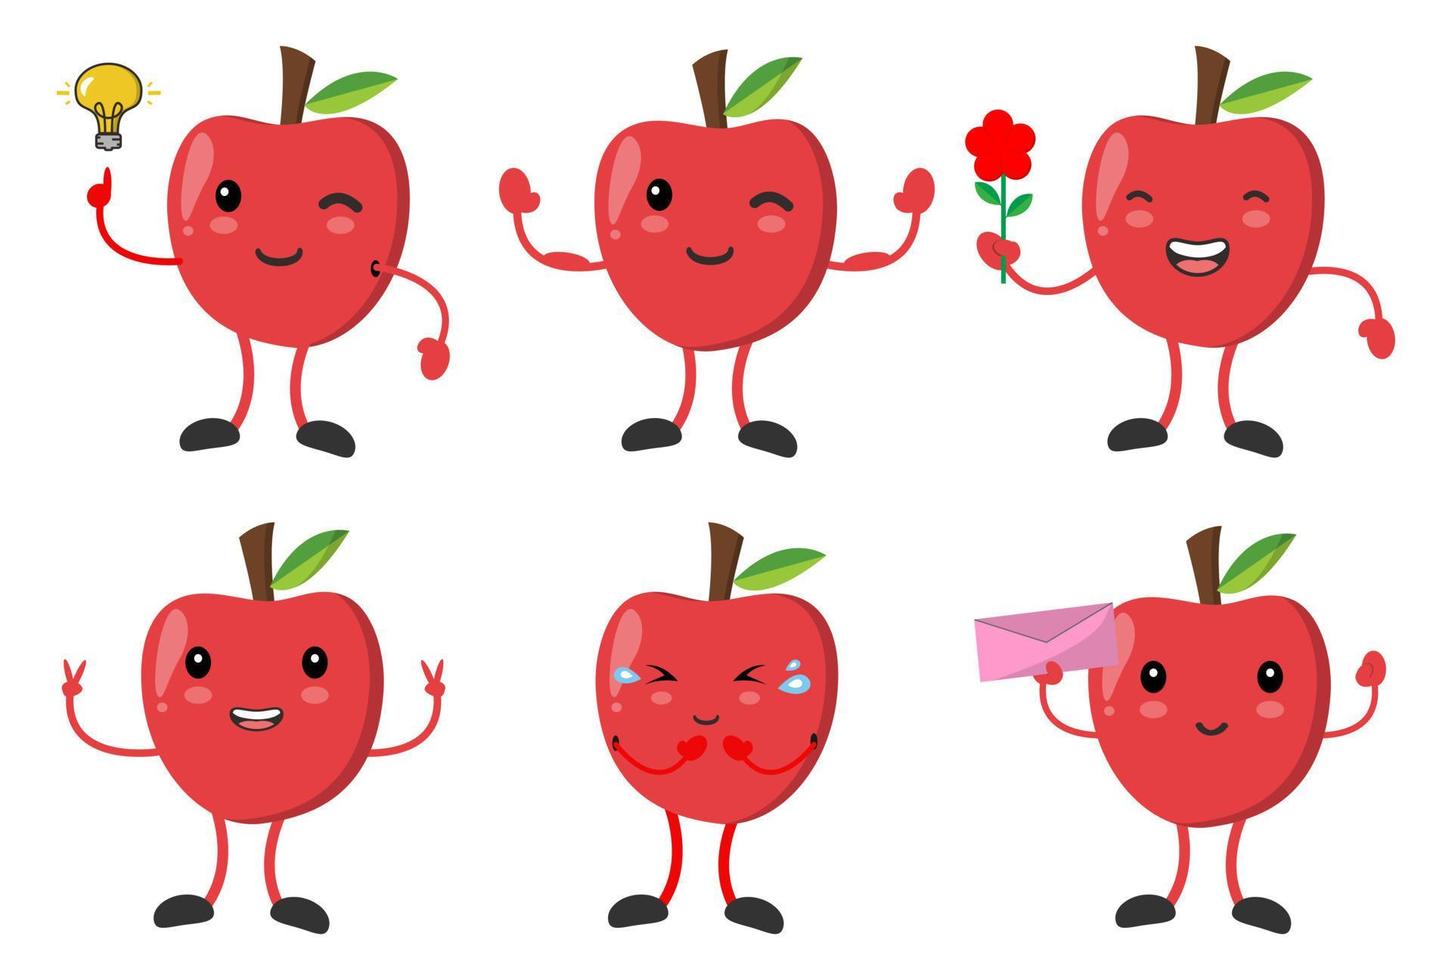 définir une pomme mignonne avec diverses émotions pose des images vectorielles de personnage de dessin animé vecteur